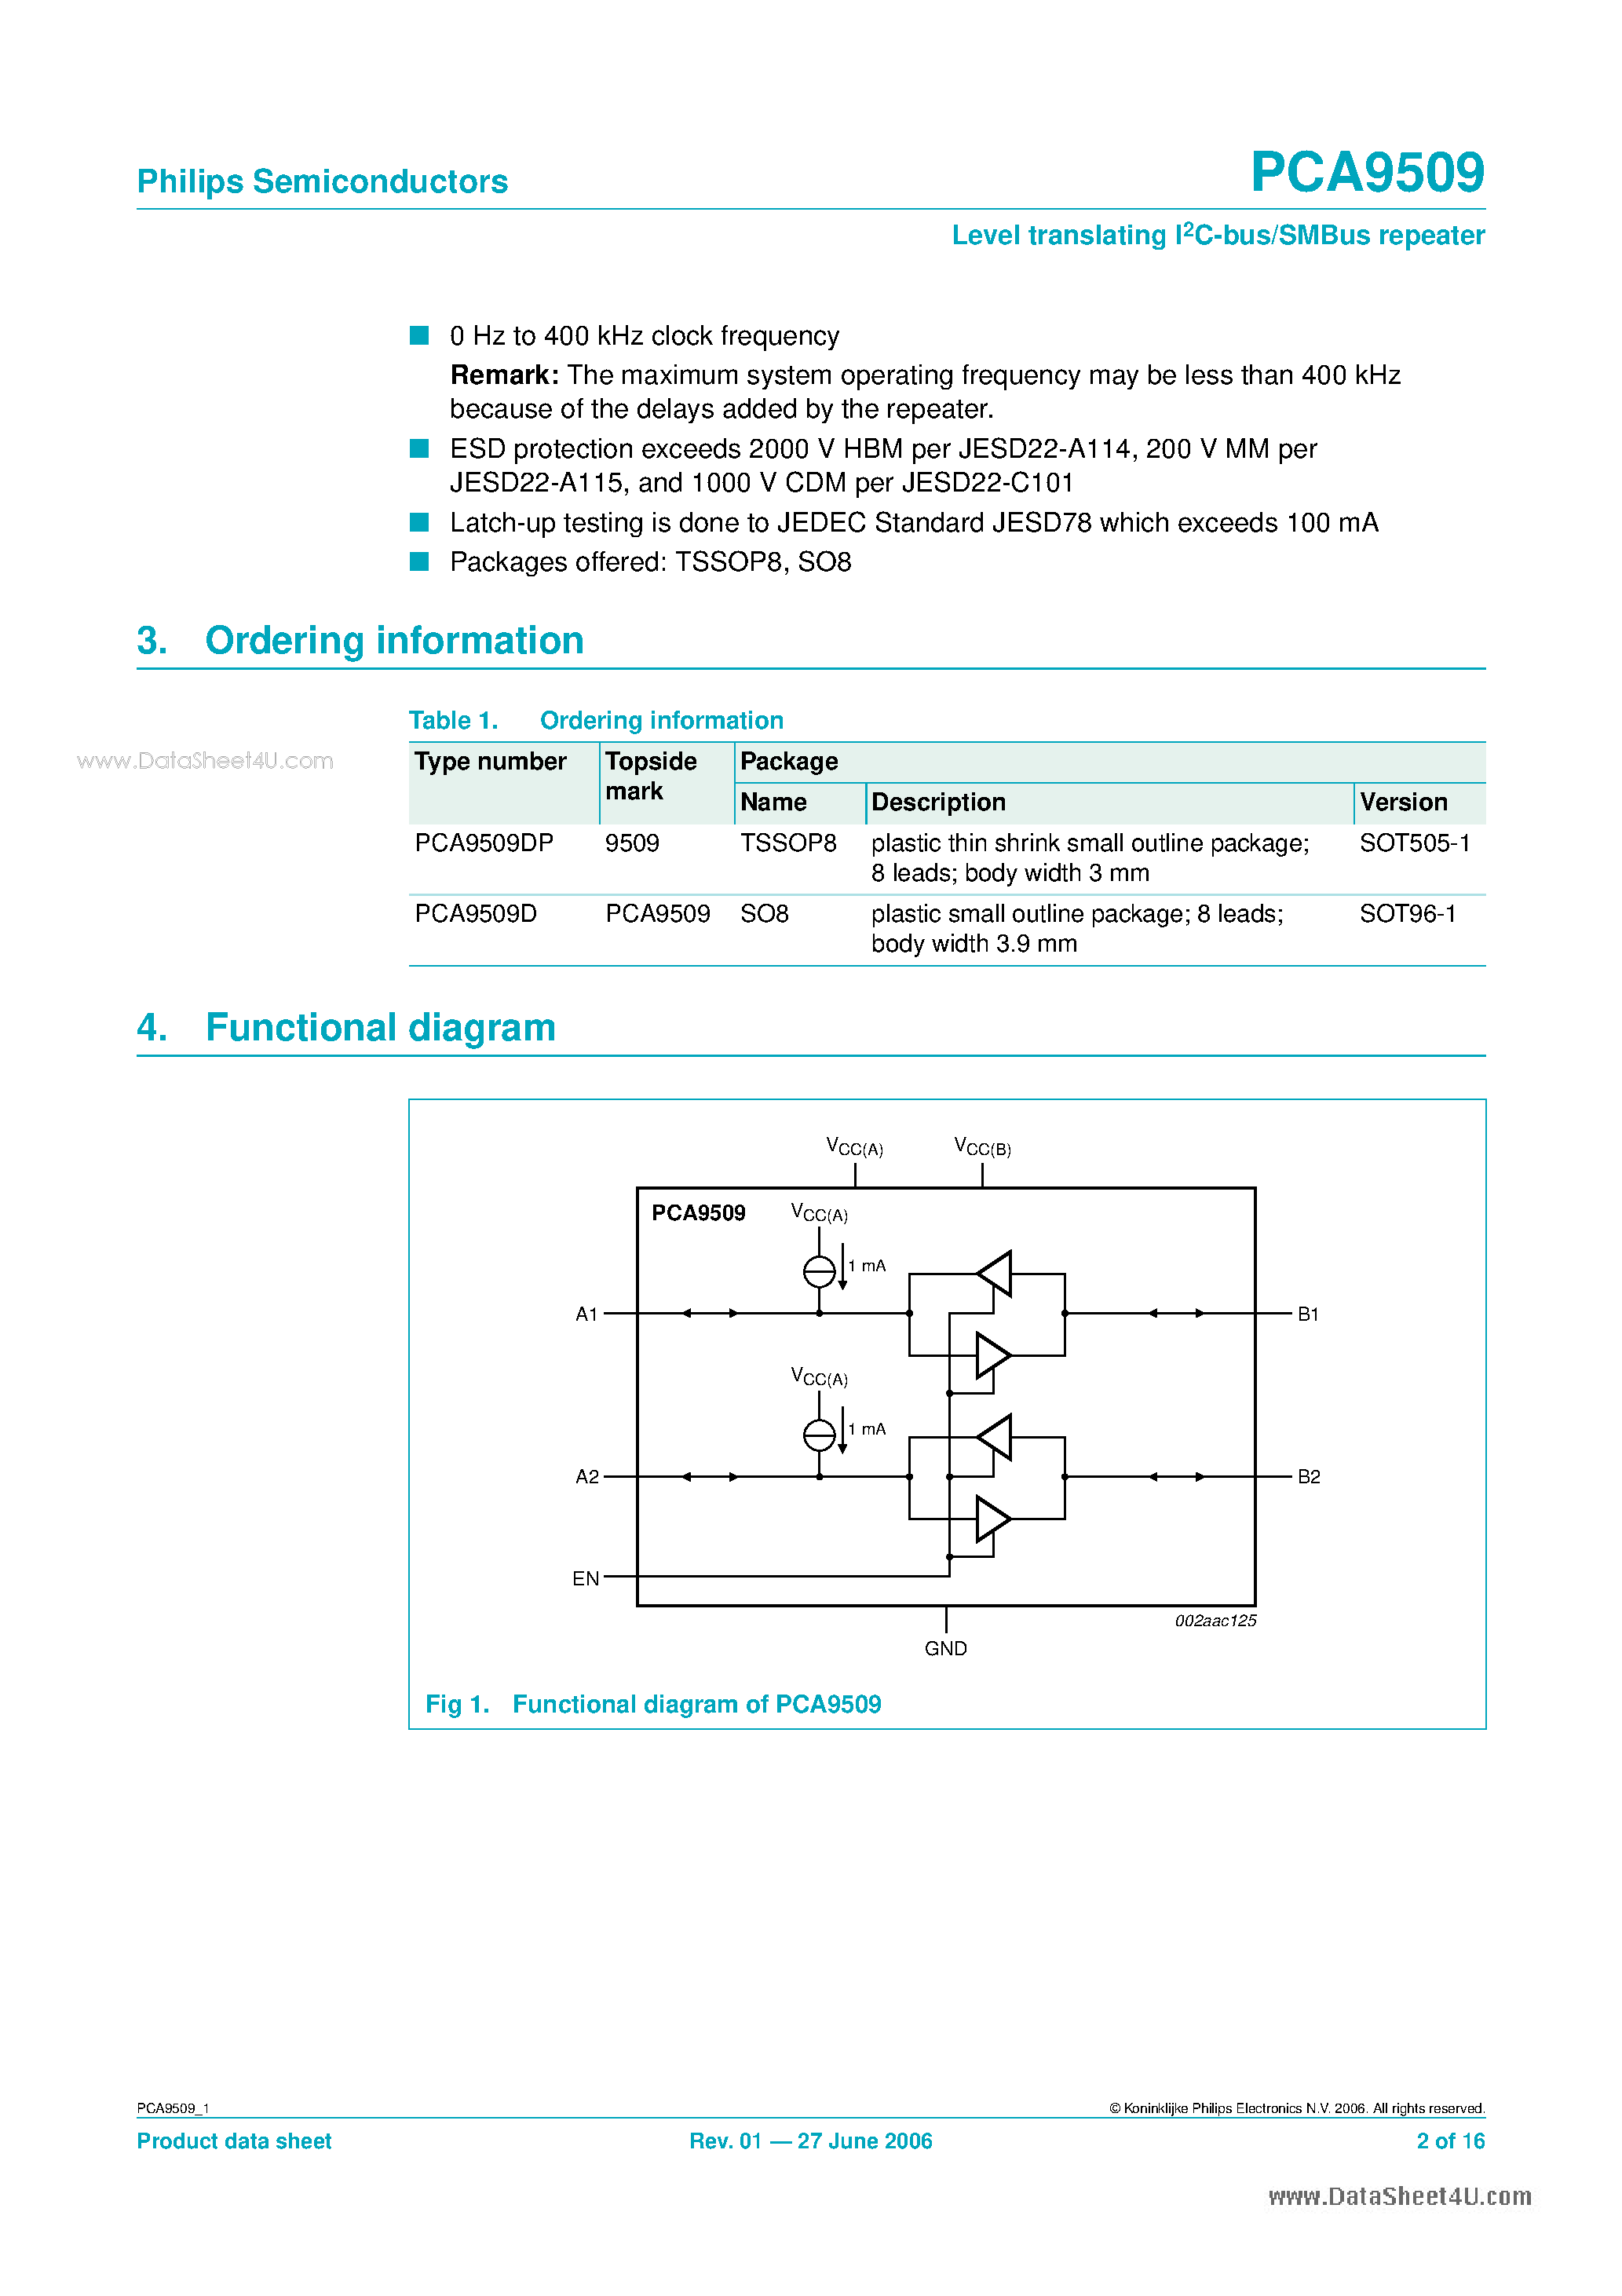 Datasheet PCA9509 - Level translating I2C-bus/SMBus repeater page 2